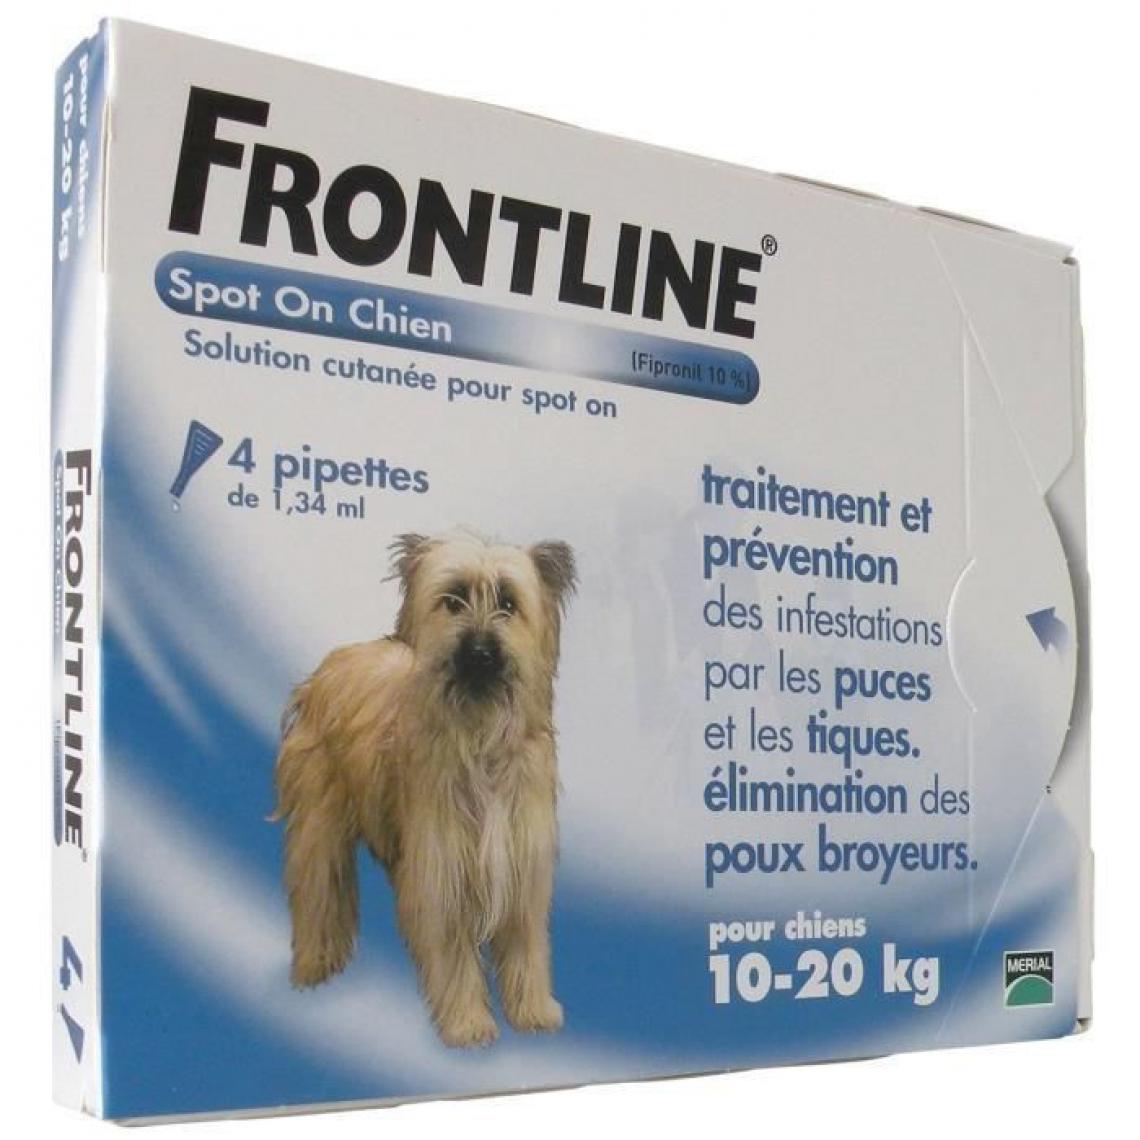 Frontline - FRONTLINE Spot On chien 10-20kg - 4 pipettes - Anti-parasitaire pour chien